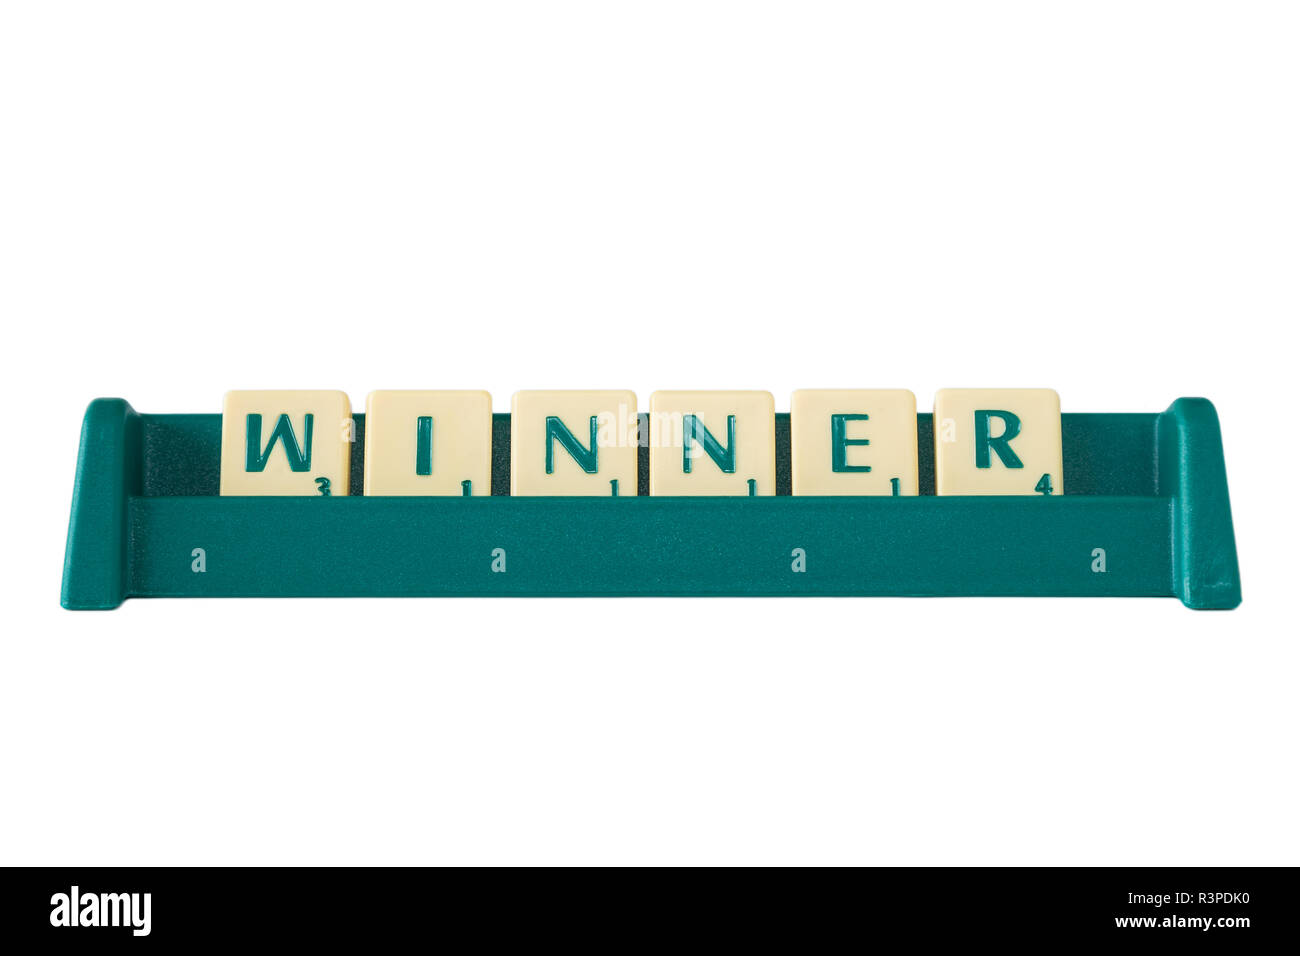 Jeu de Scrabble lettres avec valeur score sur un support formant le mot 'gagnant'. Isolé sur fond blanc. Banque D'Images